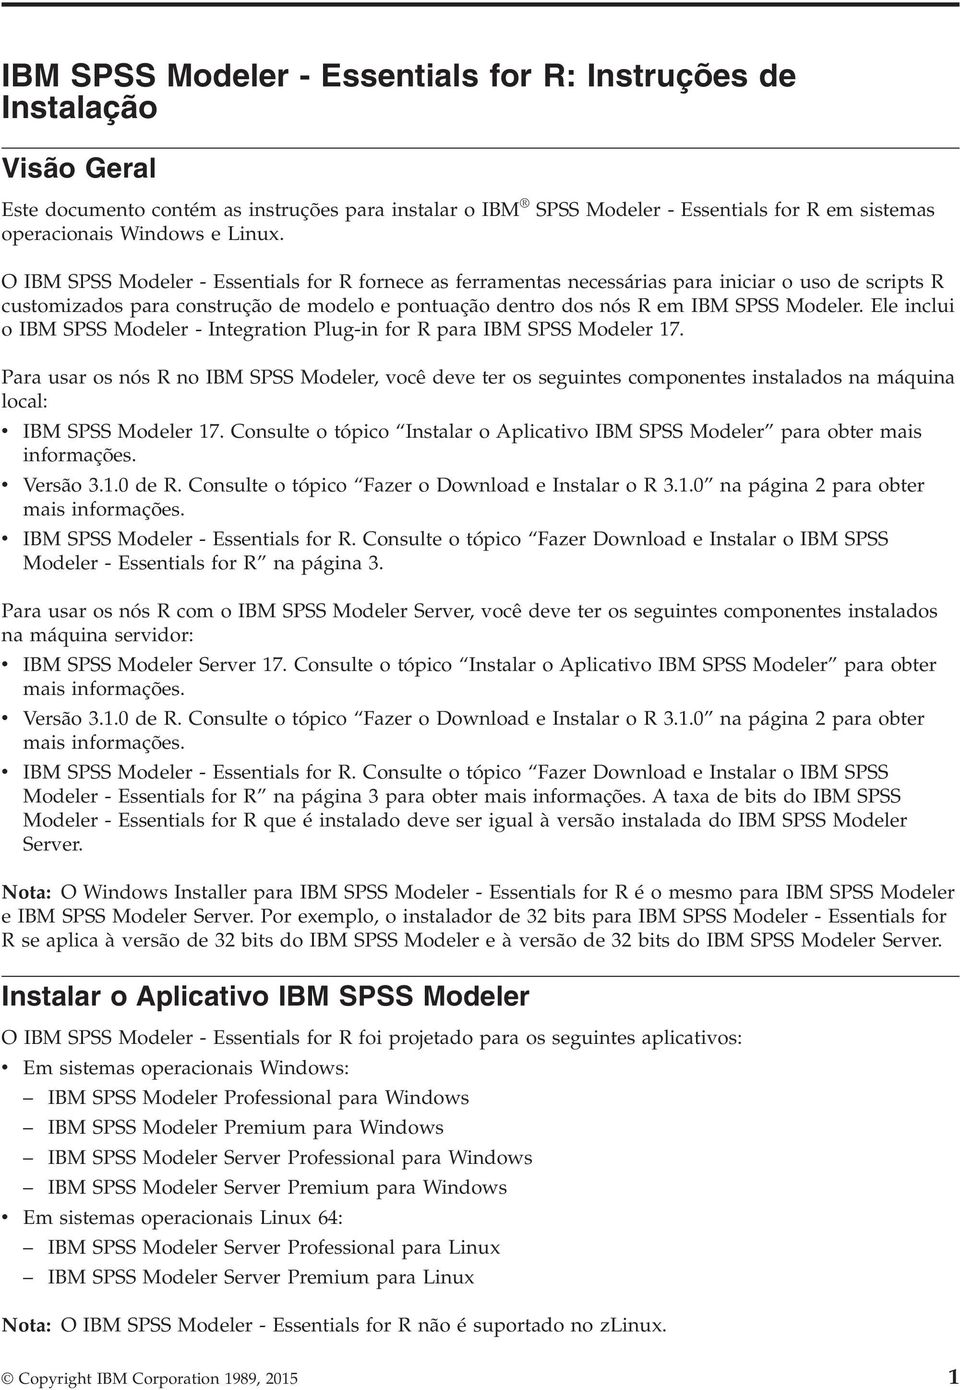 Ele inclui o IBM SPSS Modeler - Integration Plug-in for R para IBM SPSS Modeler 17.